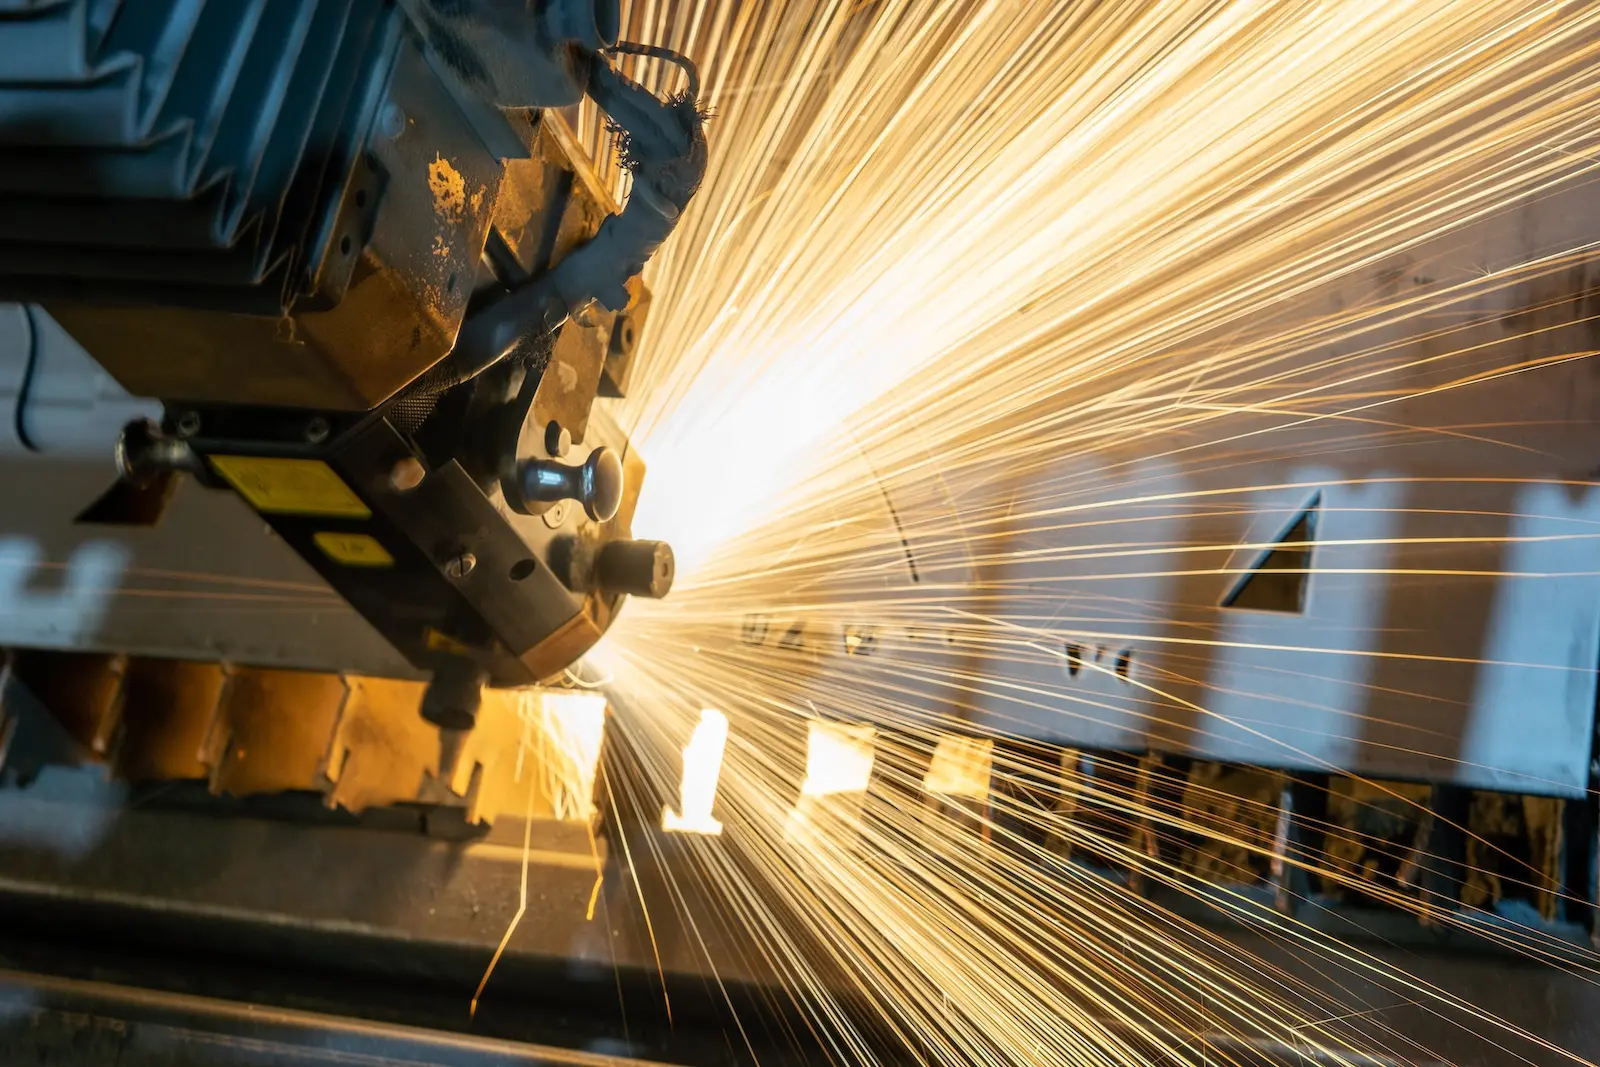 tendências para o setor metal mecânico - máquina de uma indústria metalúrgica gerando faíscas que iluminam a imagem